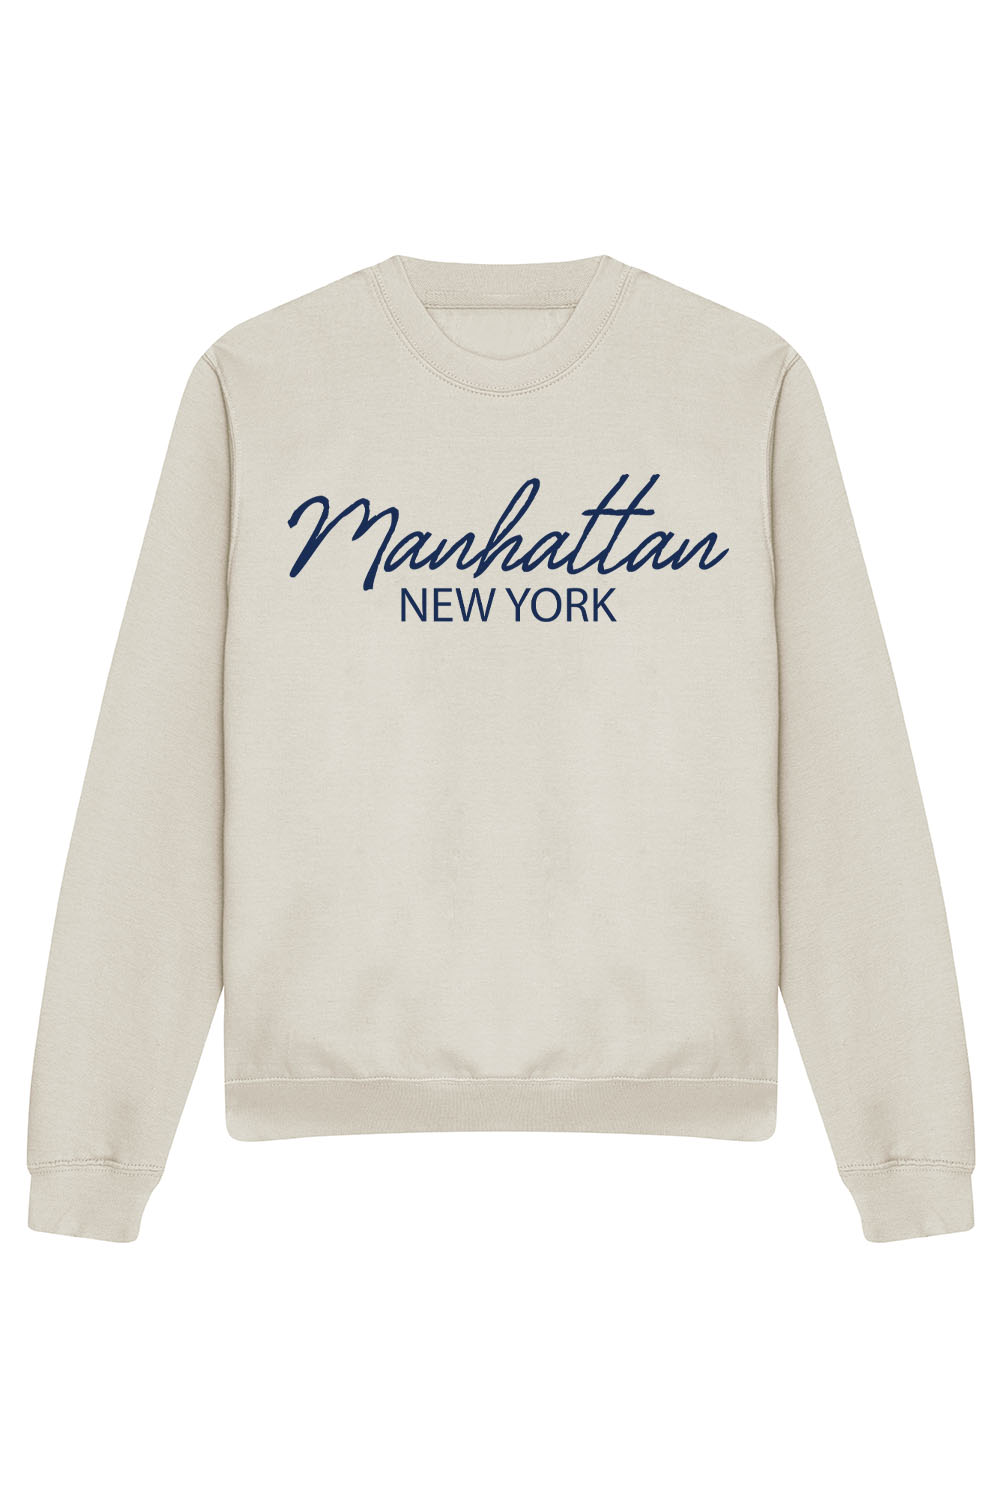 Manhattan Sweatshirt In Natural Stone (CUSTOM PACKS)